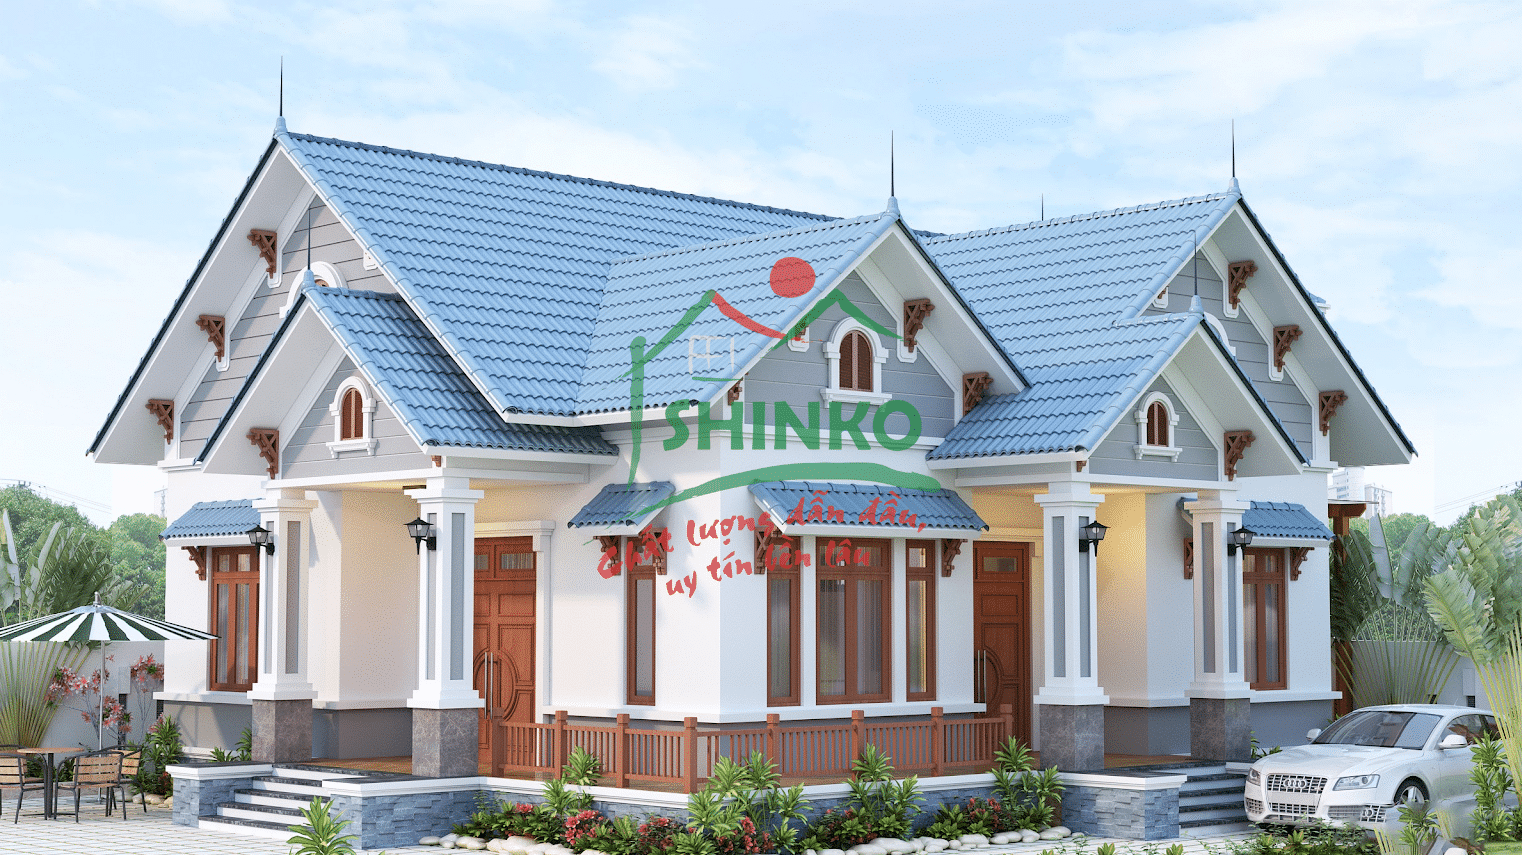 Lựa chọn ngói màu shinko để lợp nhà mái thái chính là giải pháp tối ưu nhất